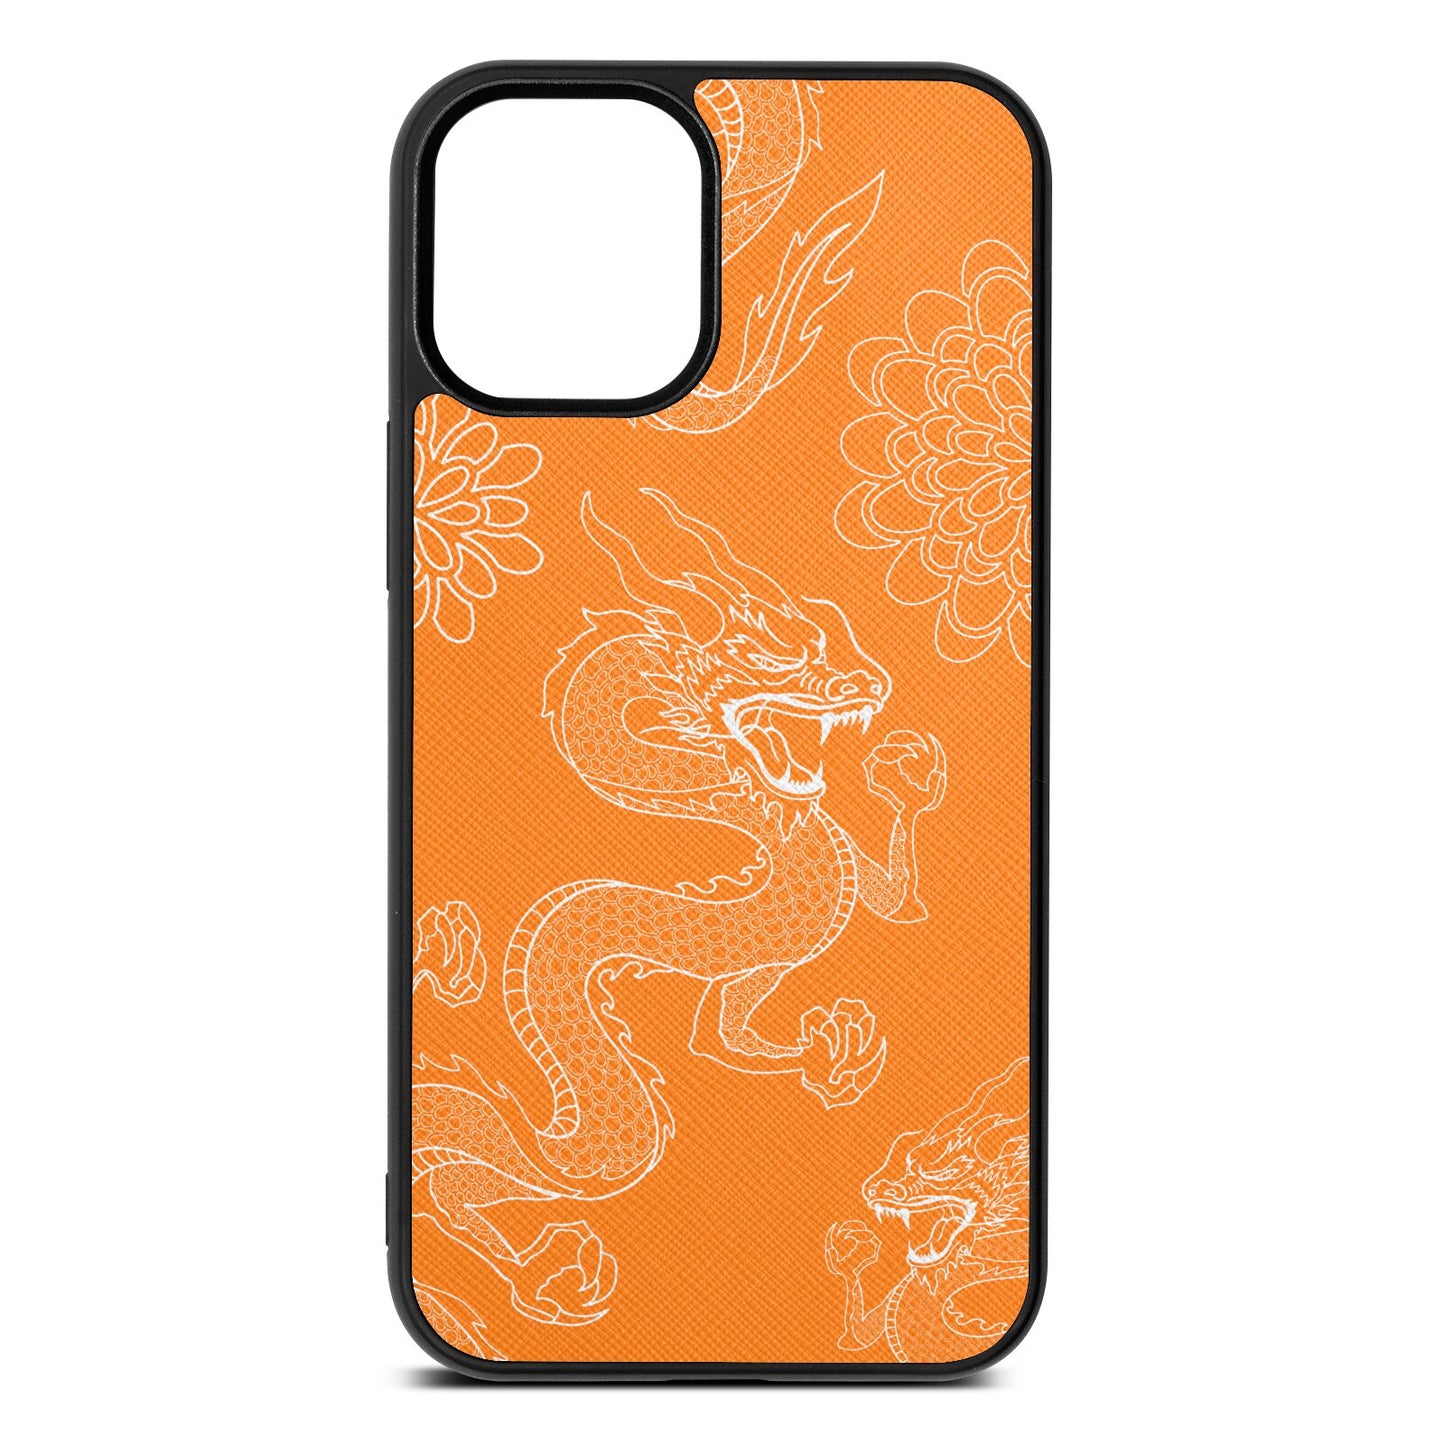 Dragons Saffron Saffiano Leather iPhone 12 Mini Case